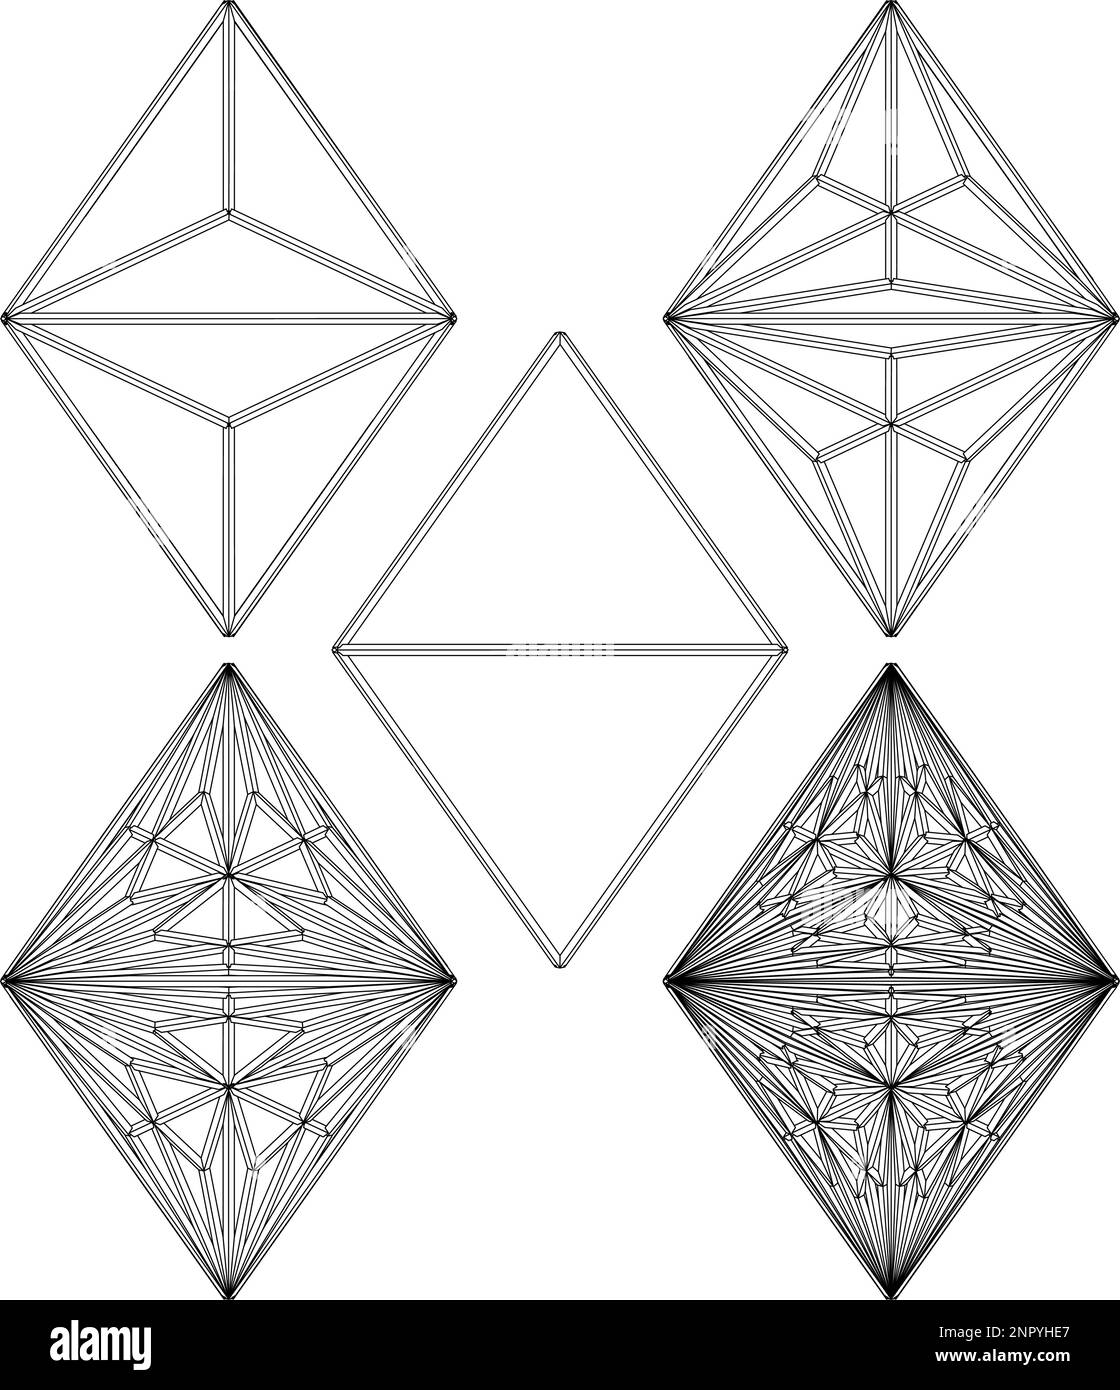 Polyeder Vom Einfachen Zum Komplizierten Formvektor. Abbildung Isoliert Auf Weißem Hintergrund. Eine Vektordarstellung der geometrischen Form. Stock Vektor